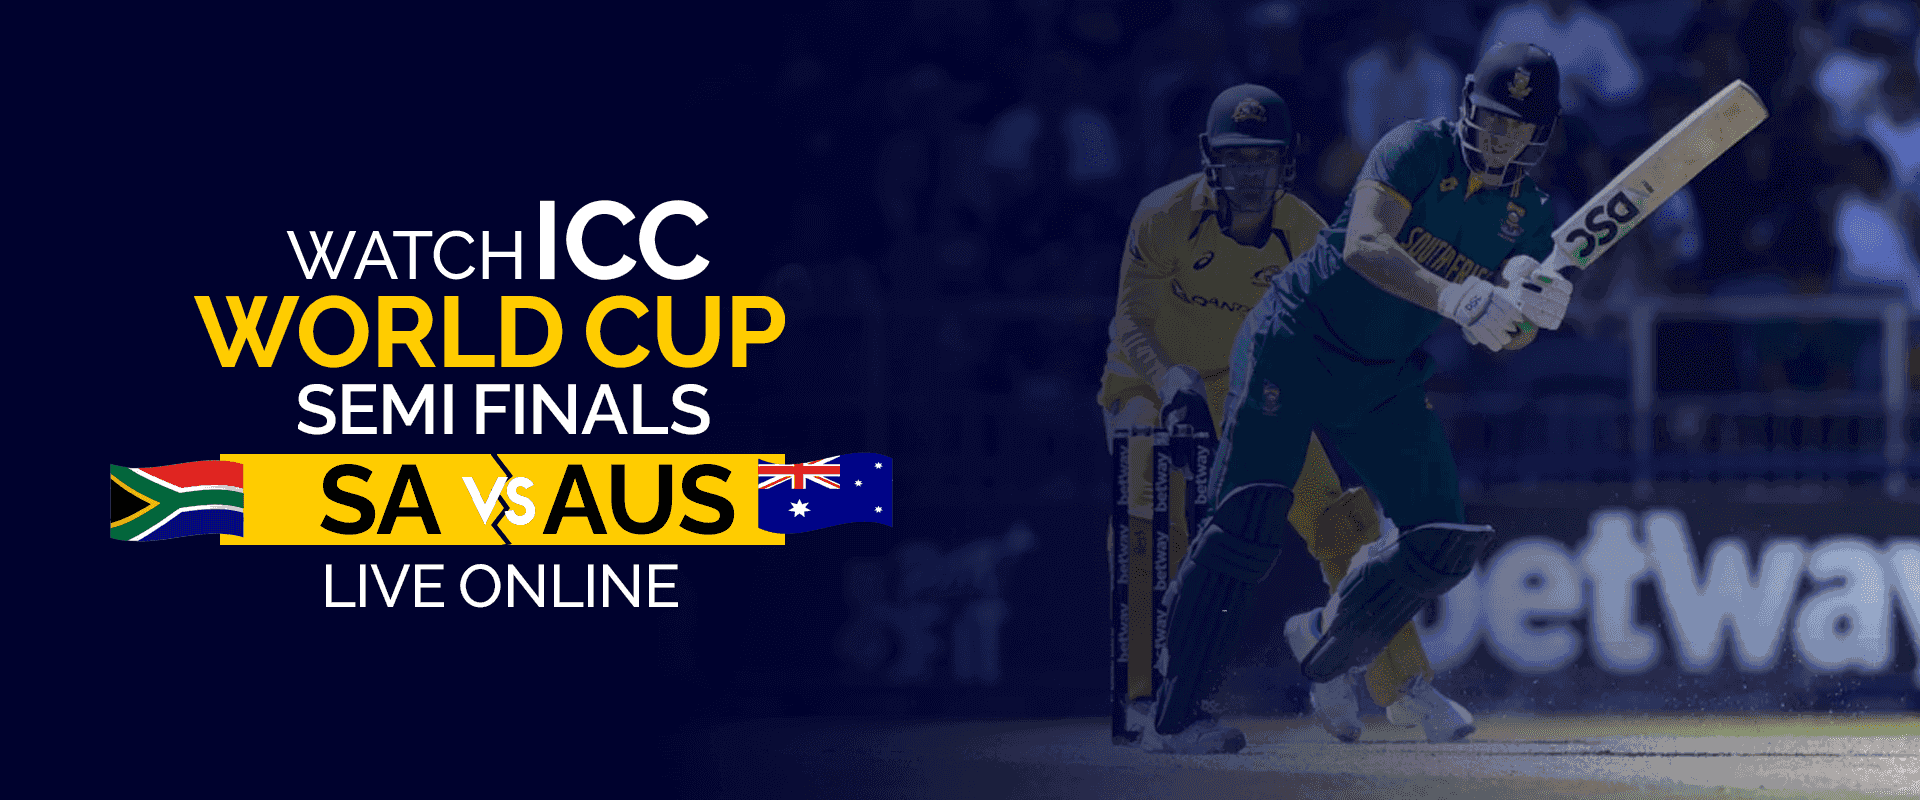 Bekijk ICC World Cup Semi-Finals SA vs AUS live online